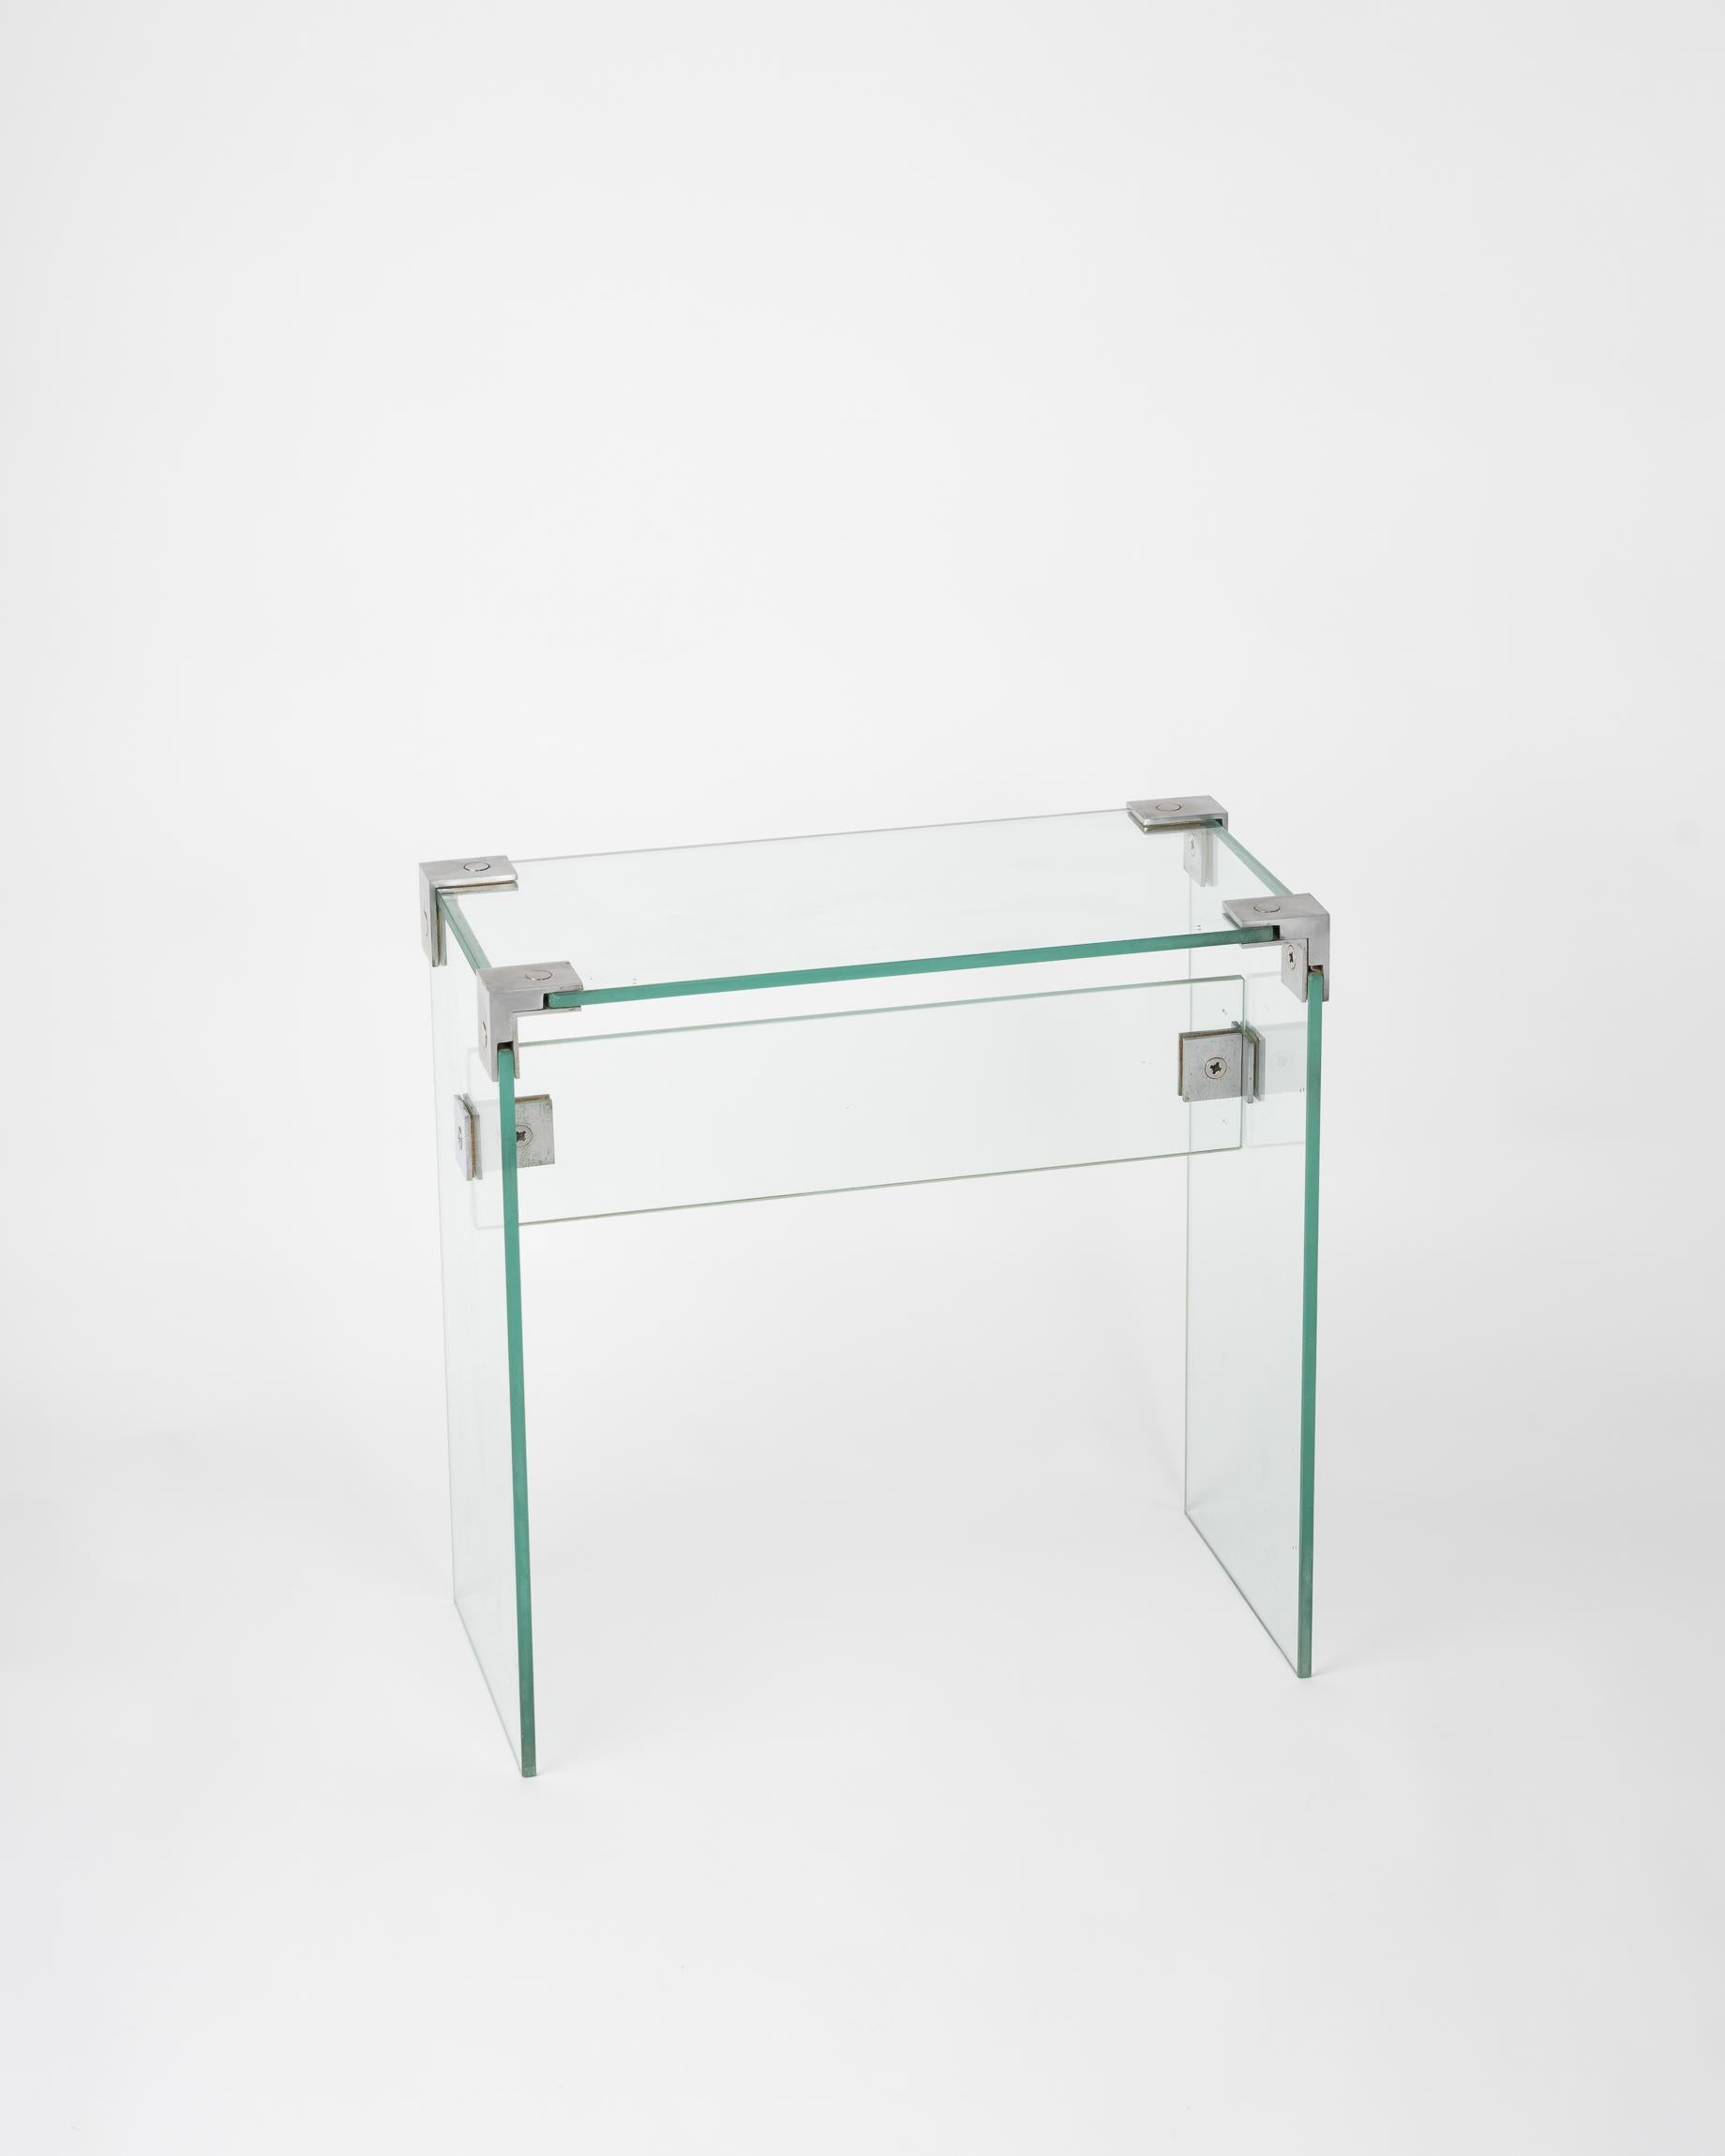 Seltener Beistelltisch aus Glas von dem ikonischen französischen Avantgarde-Designer Jacques Dumond.
Glieder aus rostfreiem Stahl.
Dieser Tisch wird von Frankreich aus versandt.
Der Preis beinhaltet weder den Versand noch eventuelle Zollgebühren.